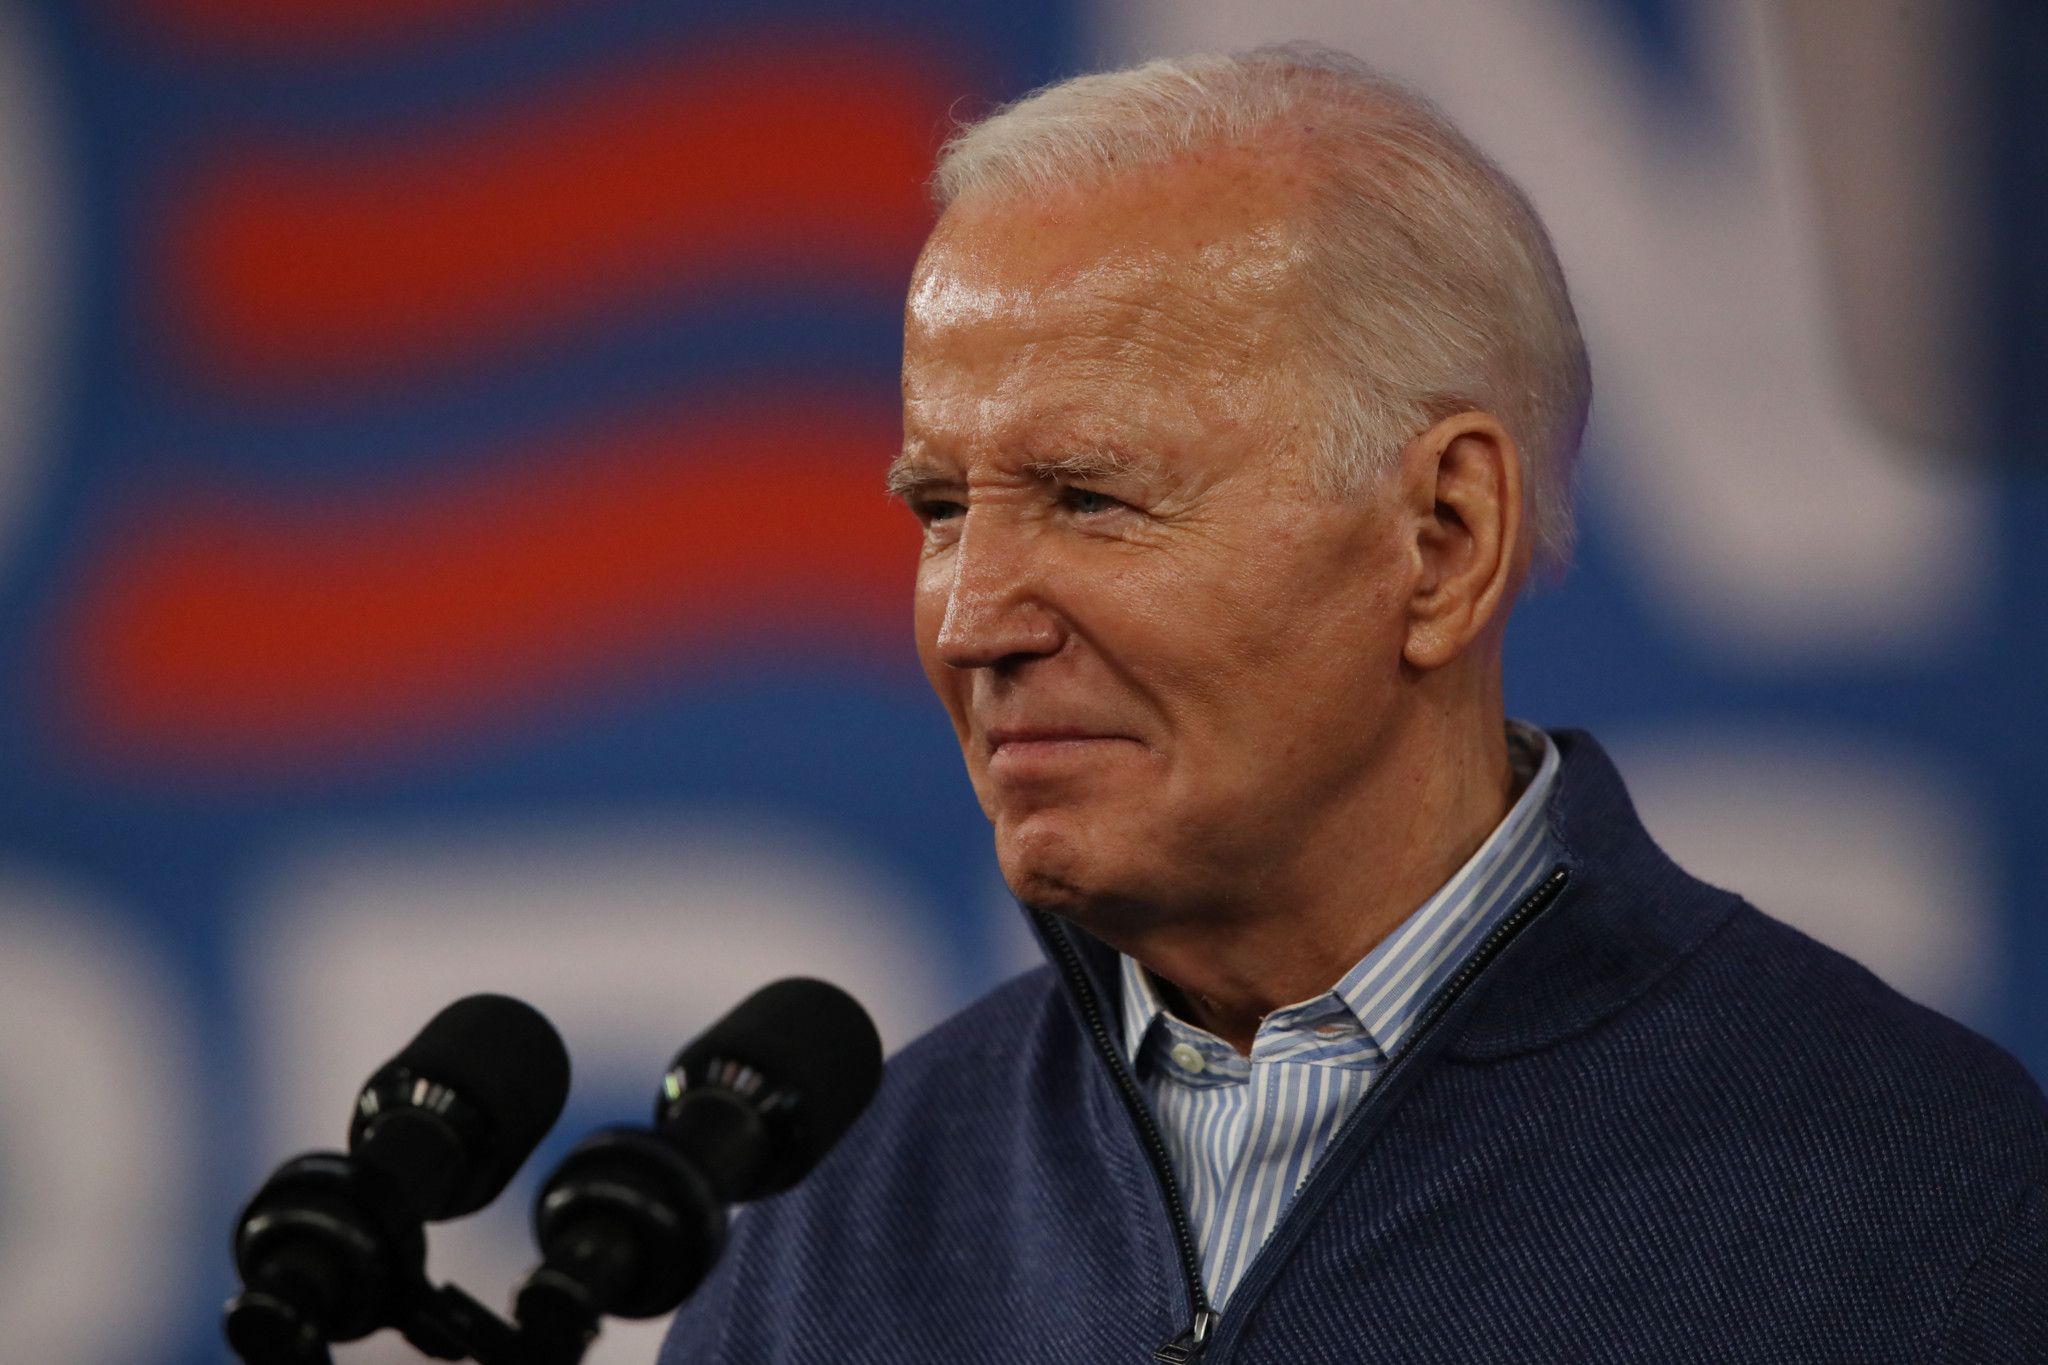 Un troisième candidat pourrait déstabiliser la campagne de Biden